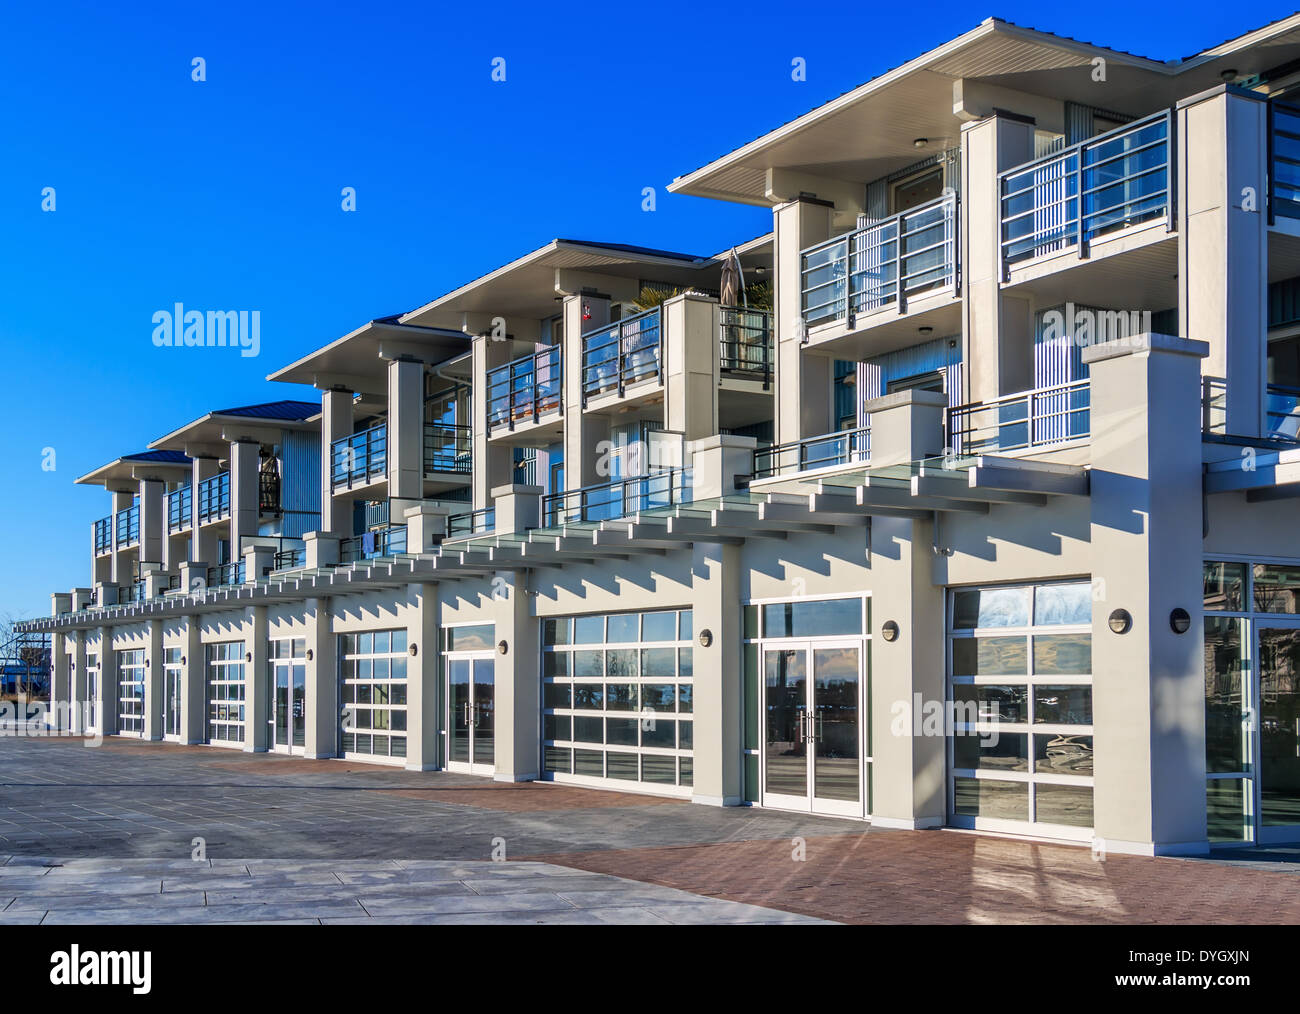 Architektonische Details des modernen Wohnhauses. Richmond, BC, Kanada Stockfoto